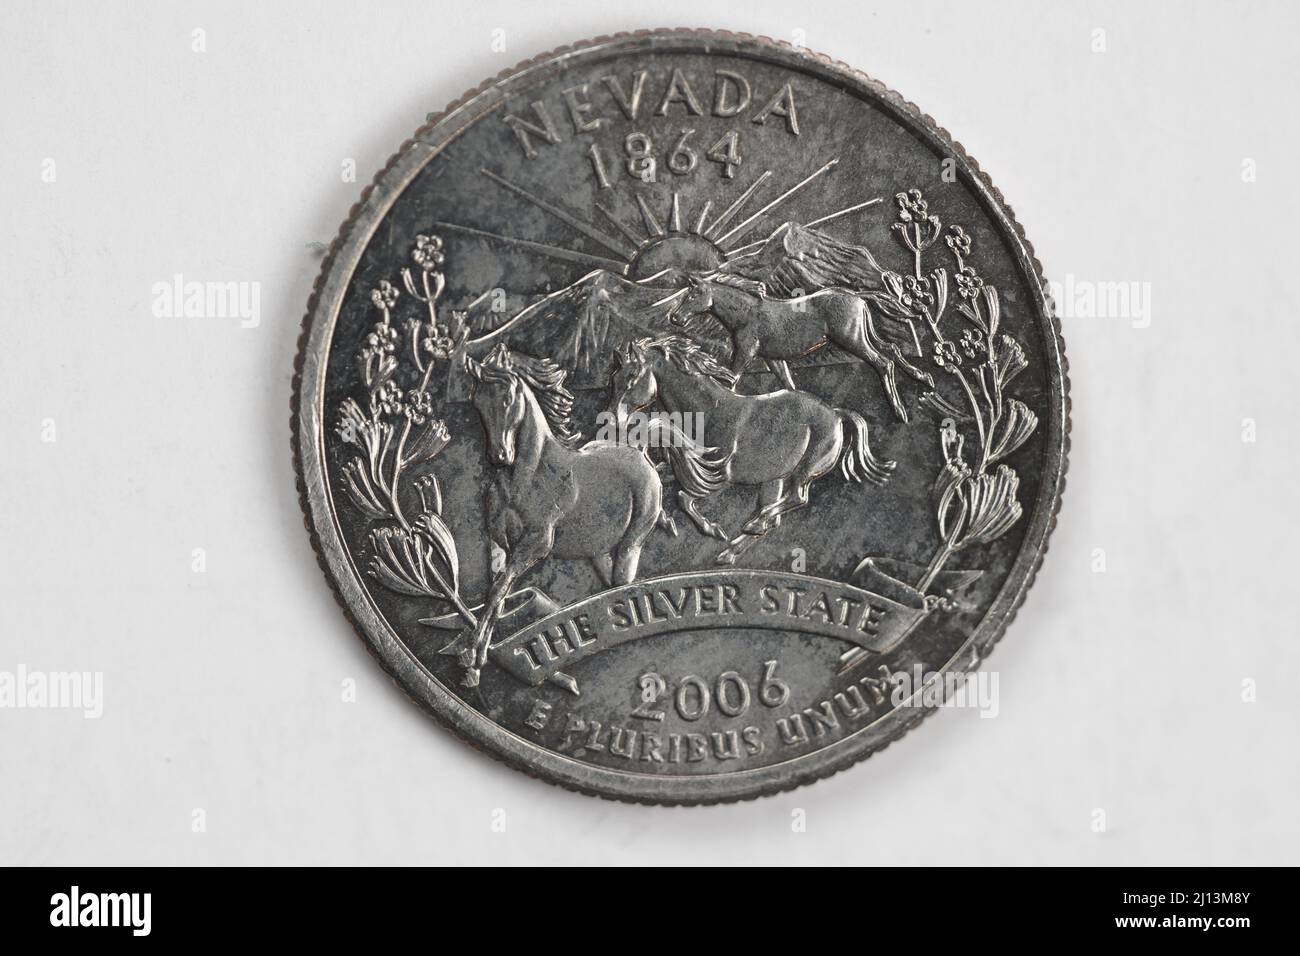 Una moneta da un quarto di dollaro (25 centesimi) con l'immagine del Nevada (lo Stato d'argento), USA. Foto Stock